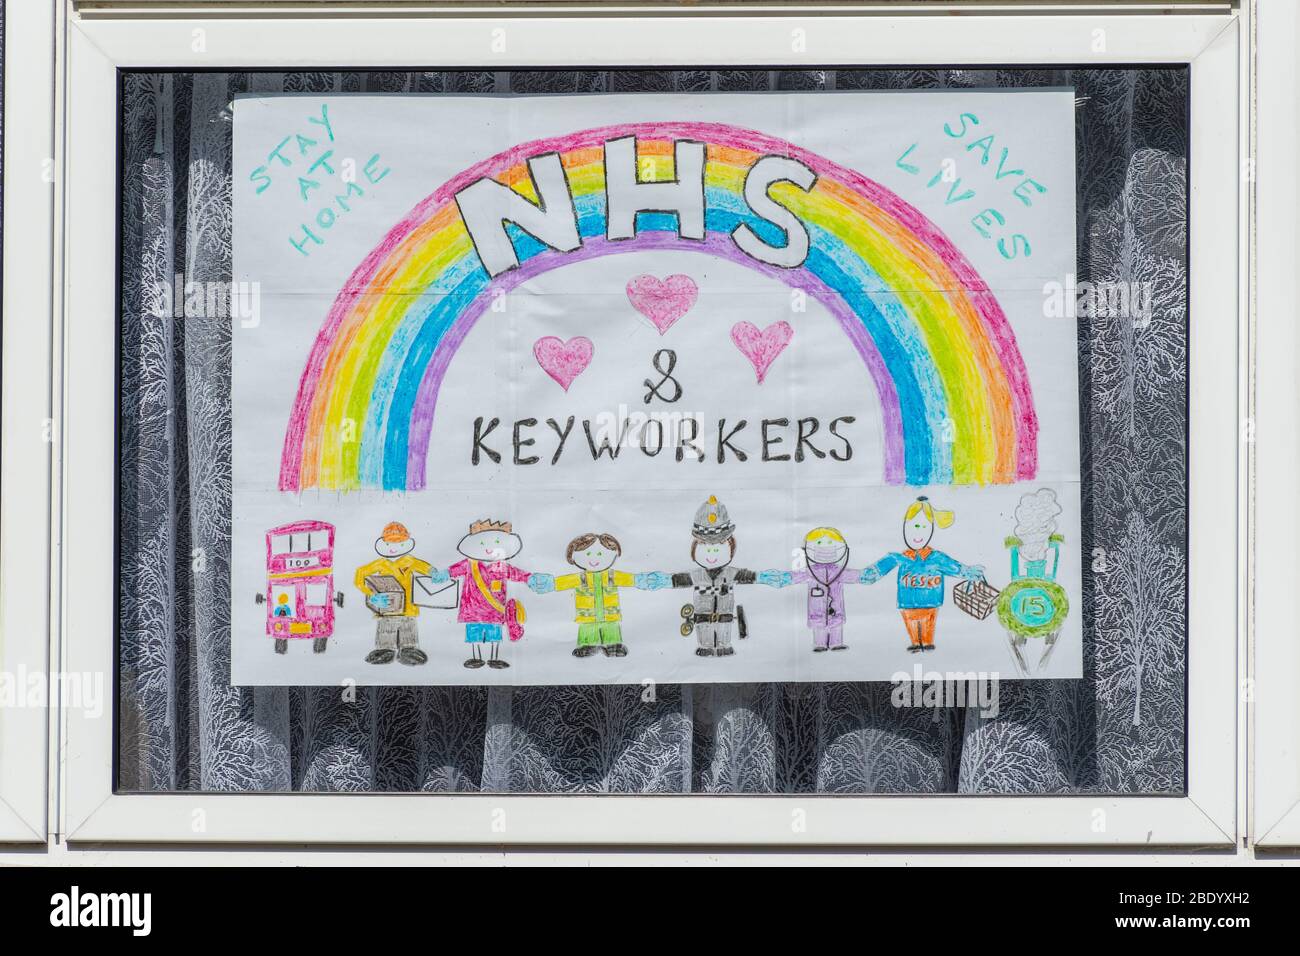 10 de abril de 2020. Durante la pandemia del coronavirus Covid-19 de 2020, el arco iris se ha convertido en un símbolo de apoyo a las personas que desean mostrar solidaridad con los trabajadores del NHS en primera línea. Los niños han estado pintando cuadros con el arco iris y pegándolos en sus ventanas para agradecer al personal del NHS y a otros trabajadores de la llave. Foto de stock